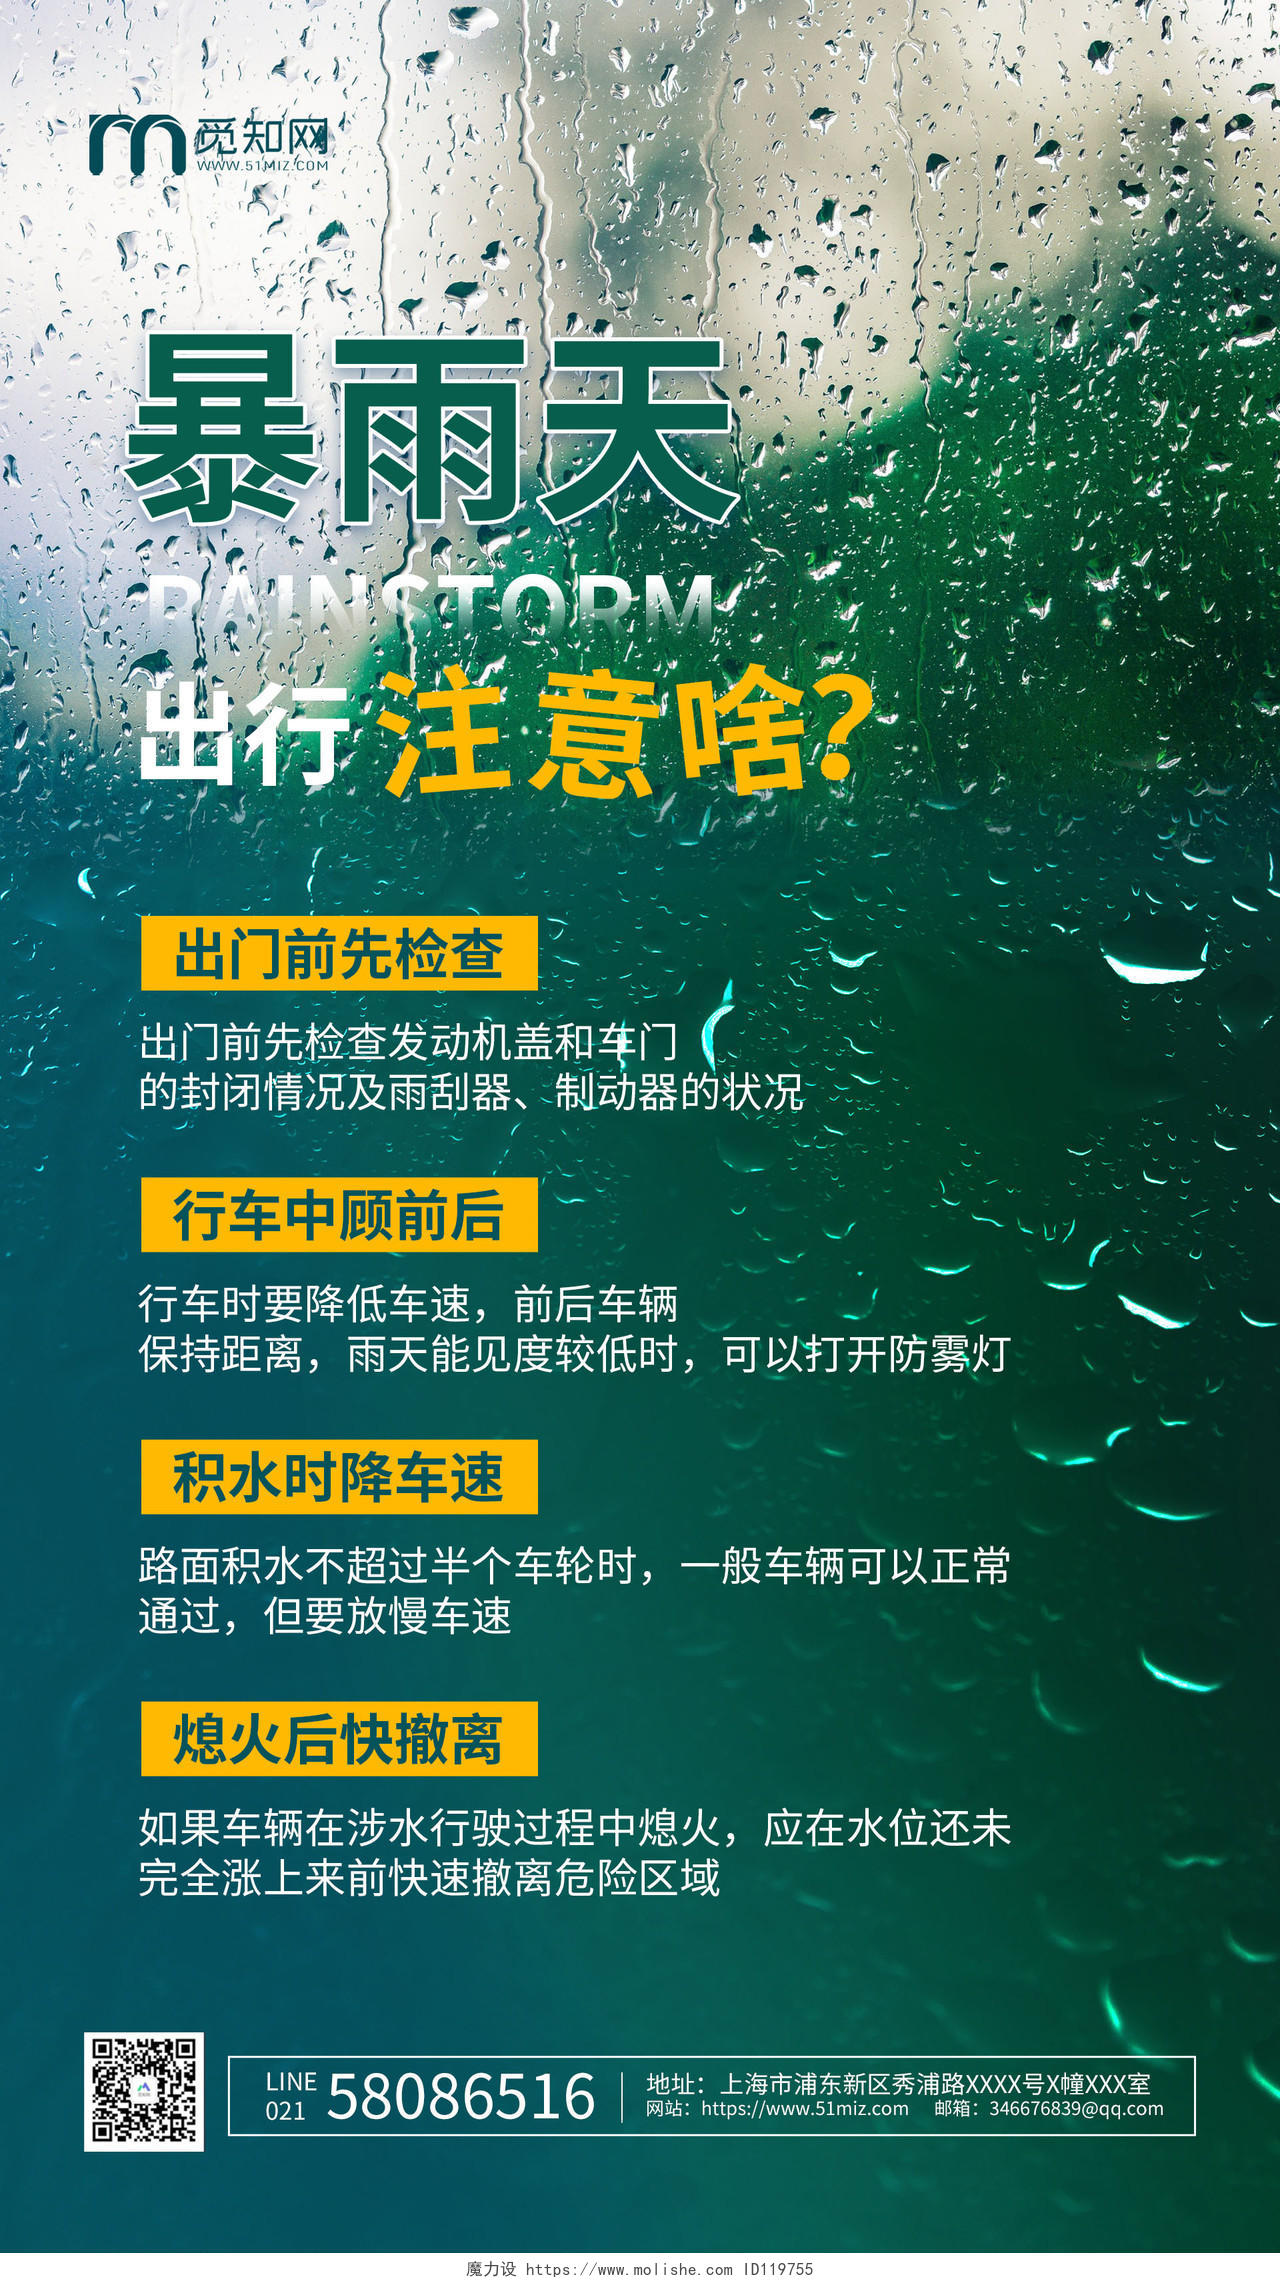 绿色简约暴雨天出行注意啥暴雨出行知识ui手机海报郑州水灾